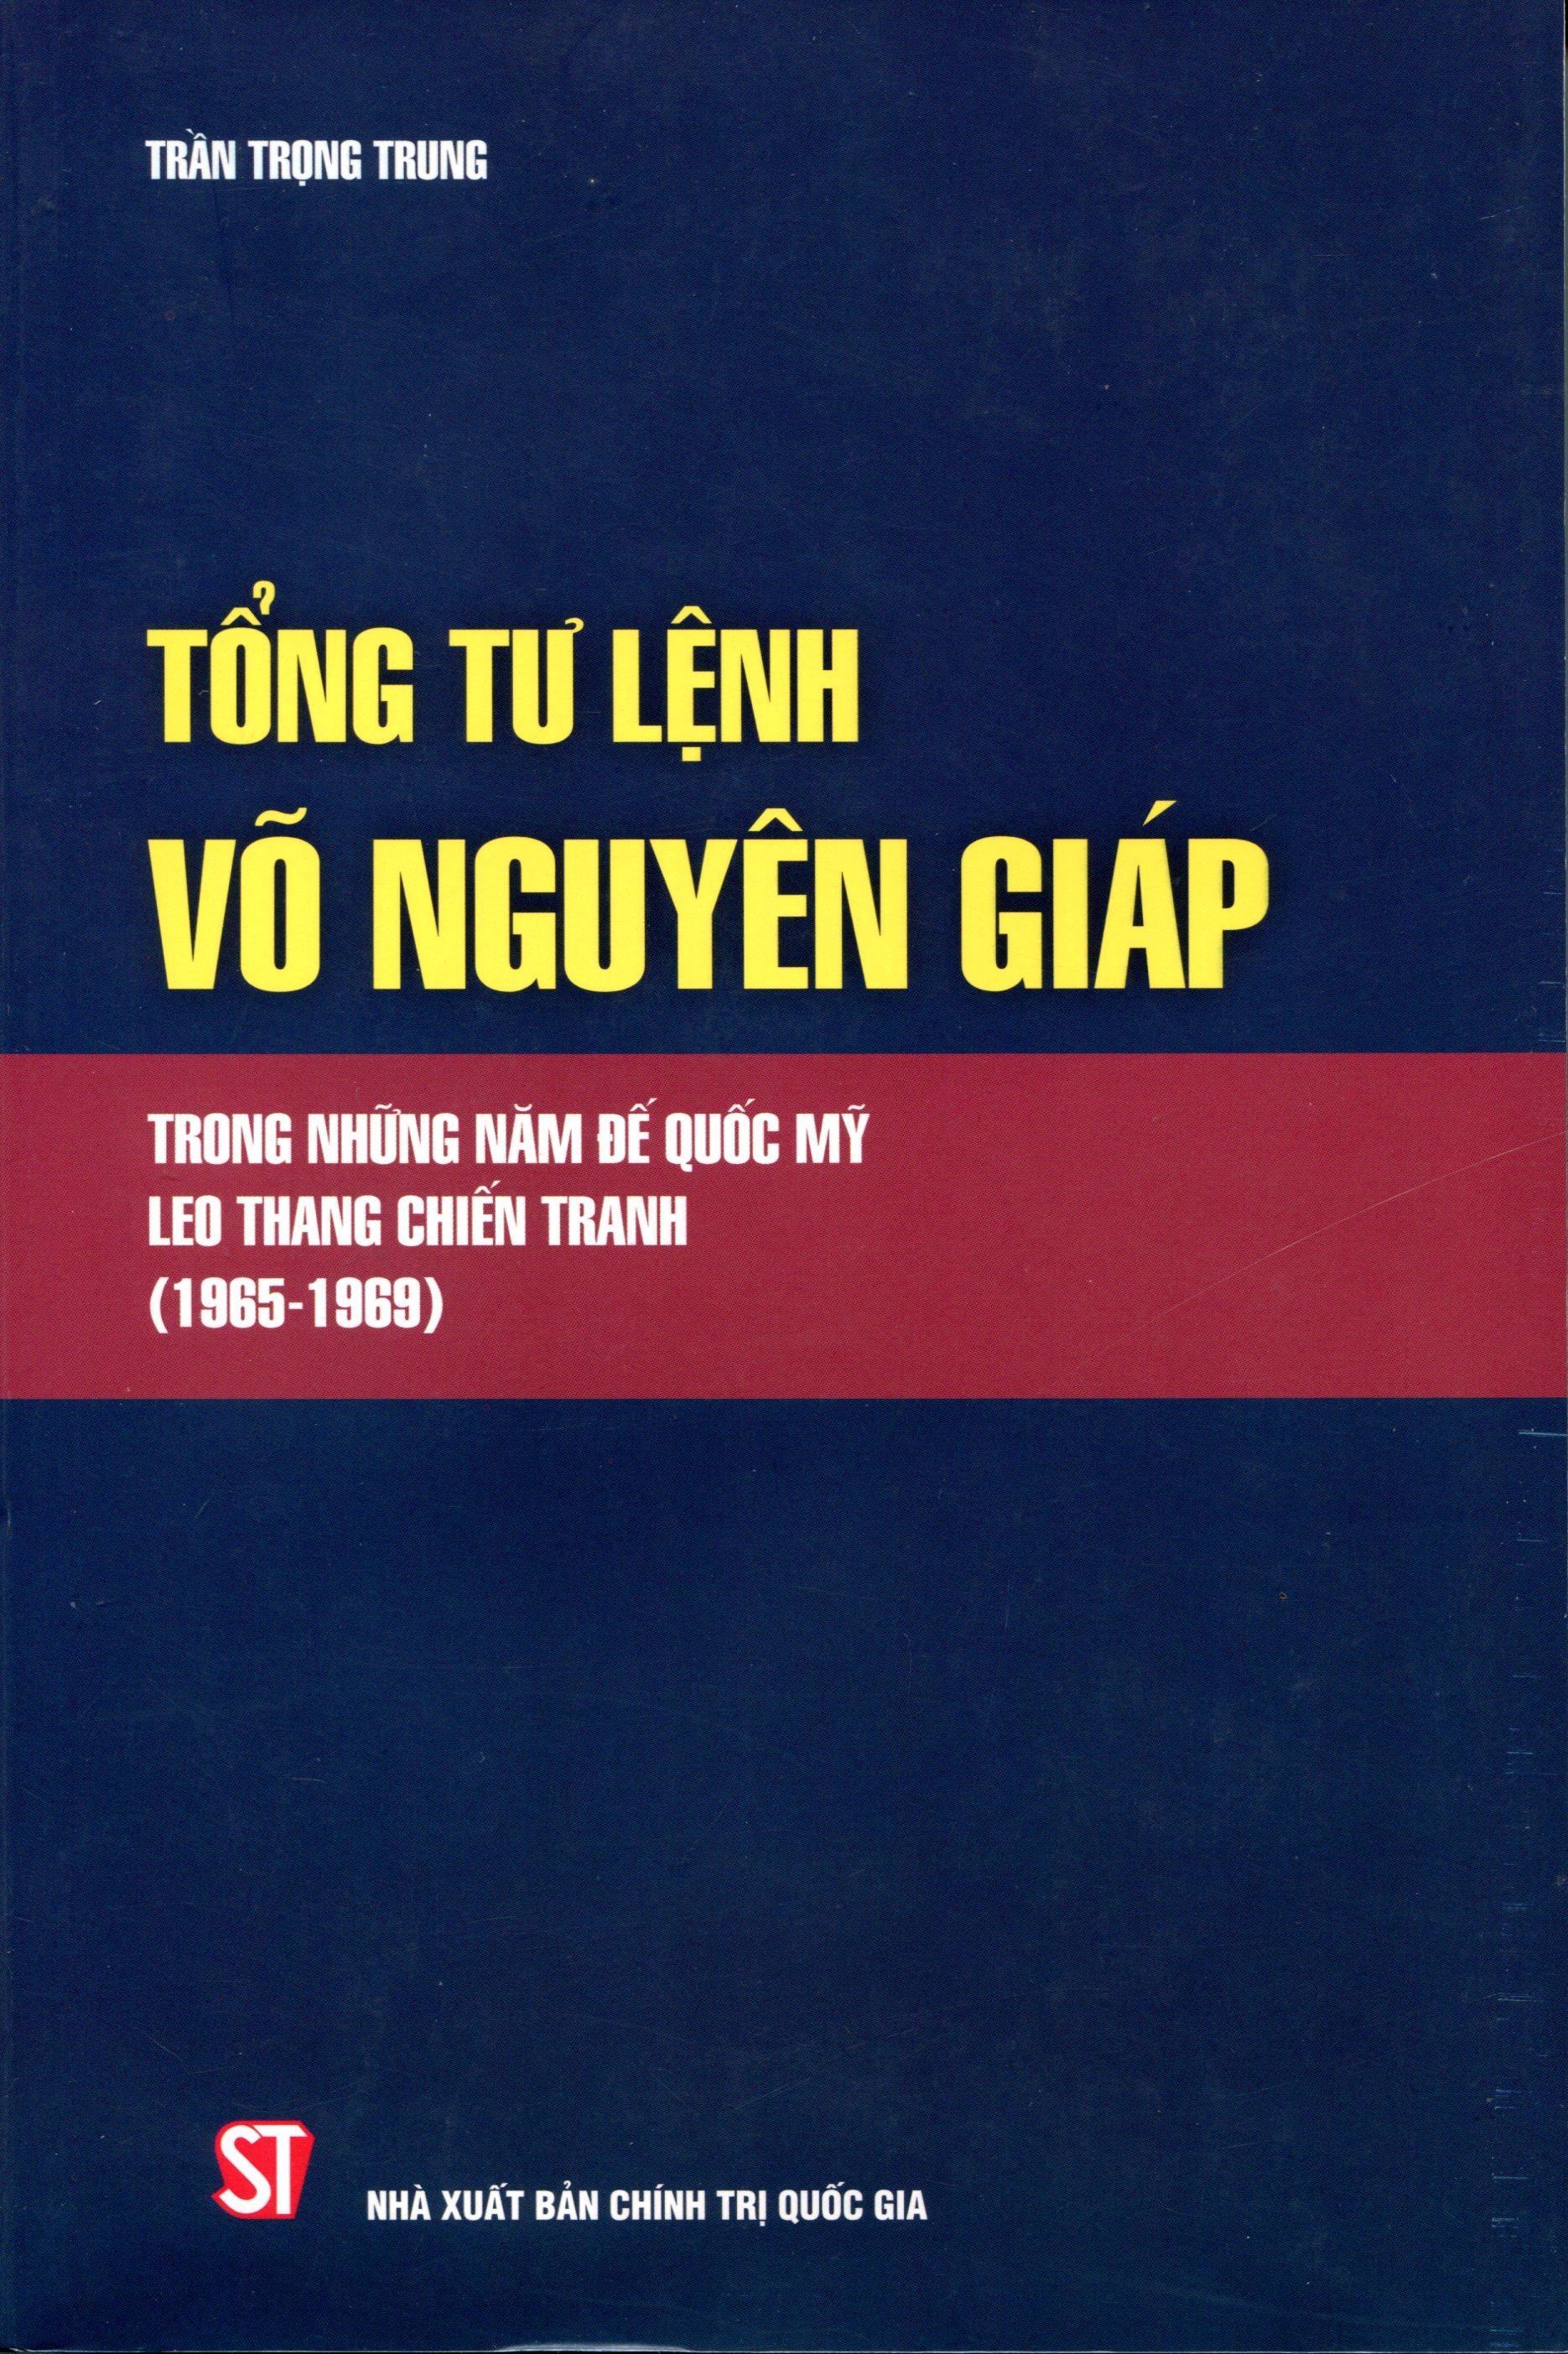 Tổng Tư Lệnh Võ Nguyên Giáp Trong Những Năm Đế Quốc Mỹ Leo Thang Chiến Tranh 1965-1969